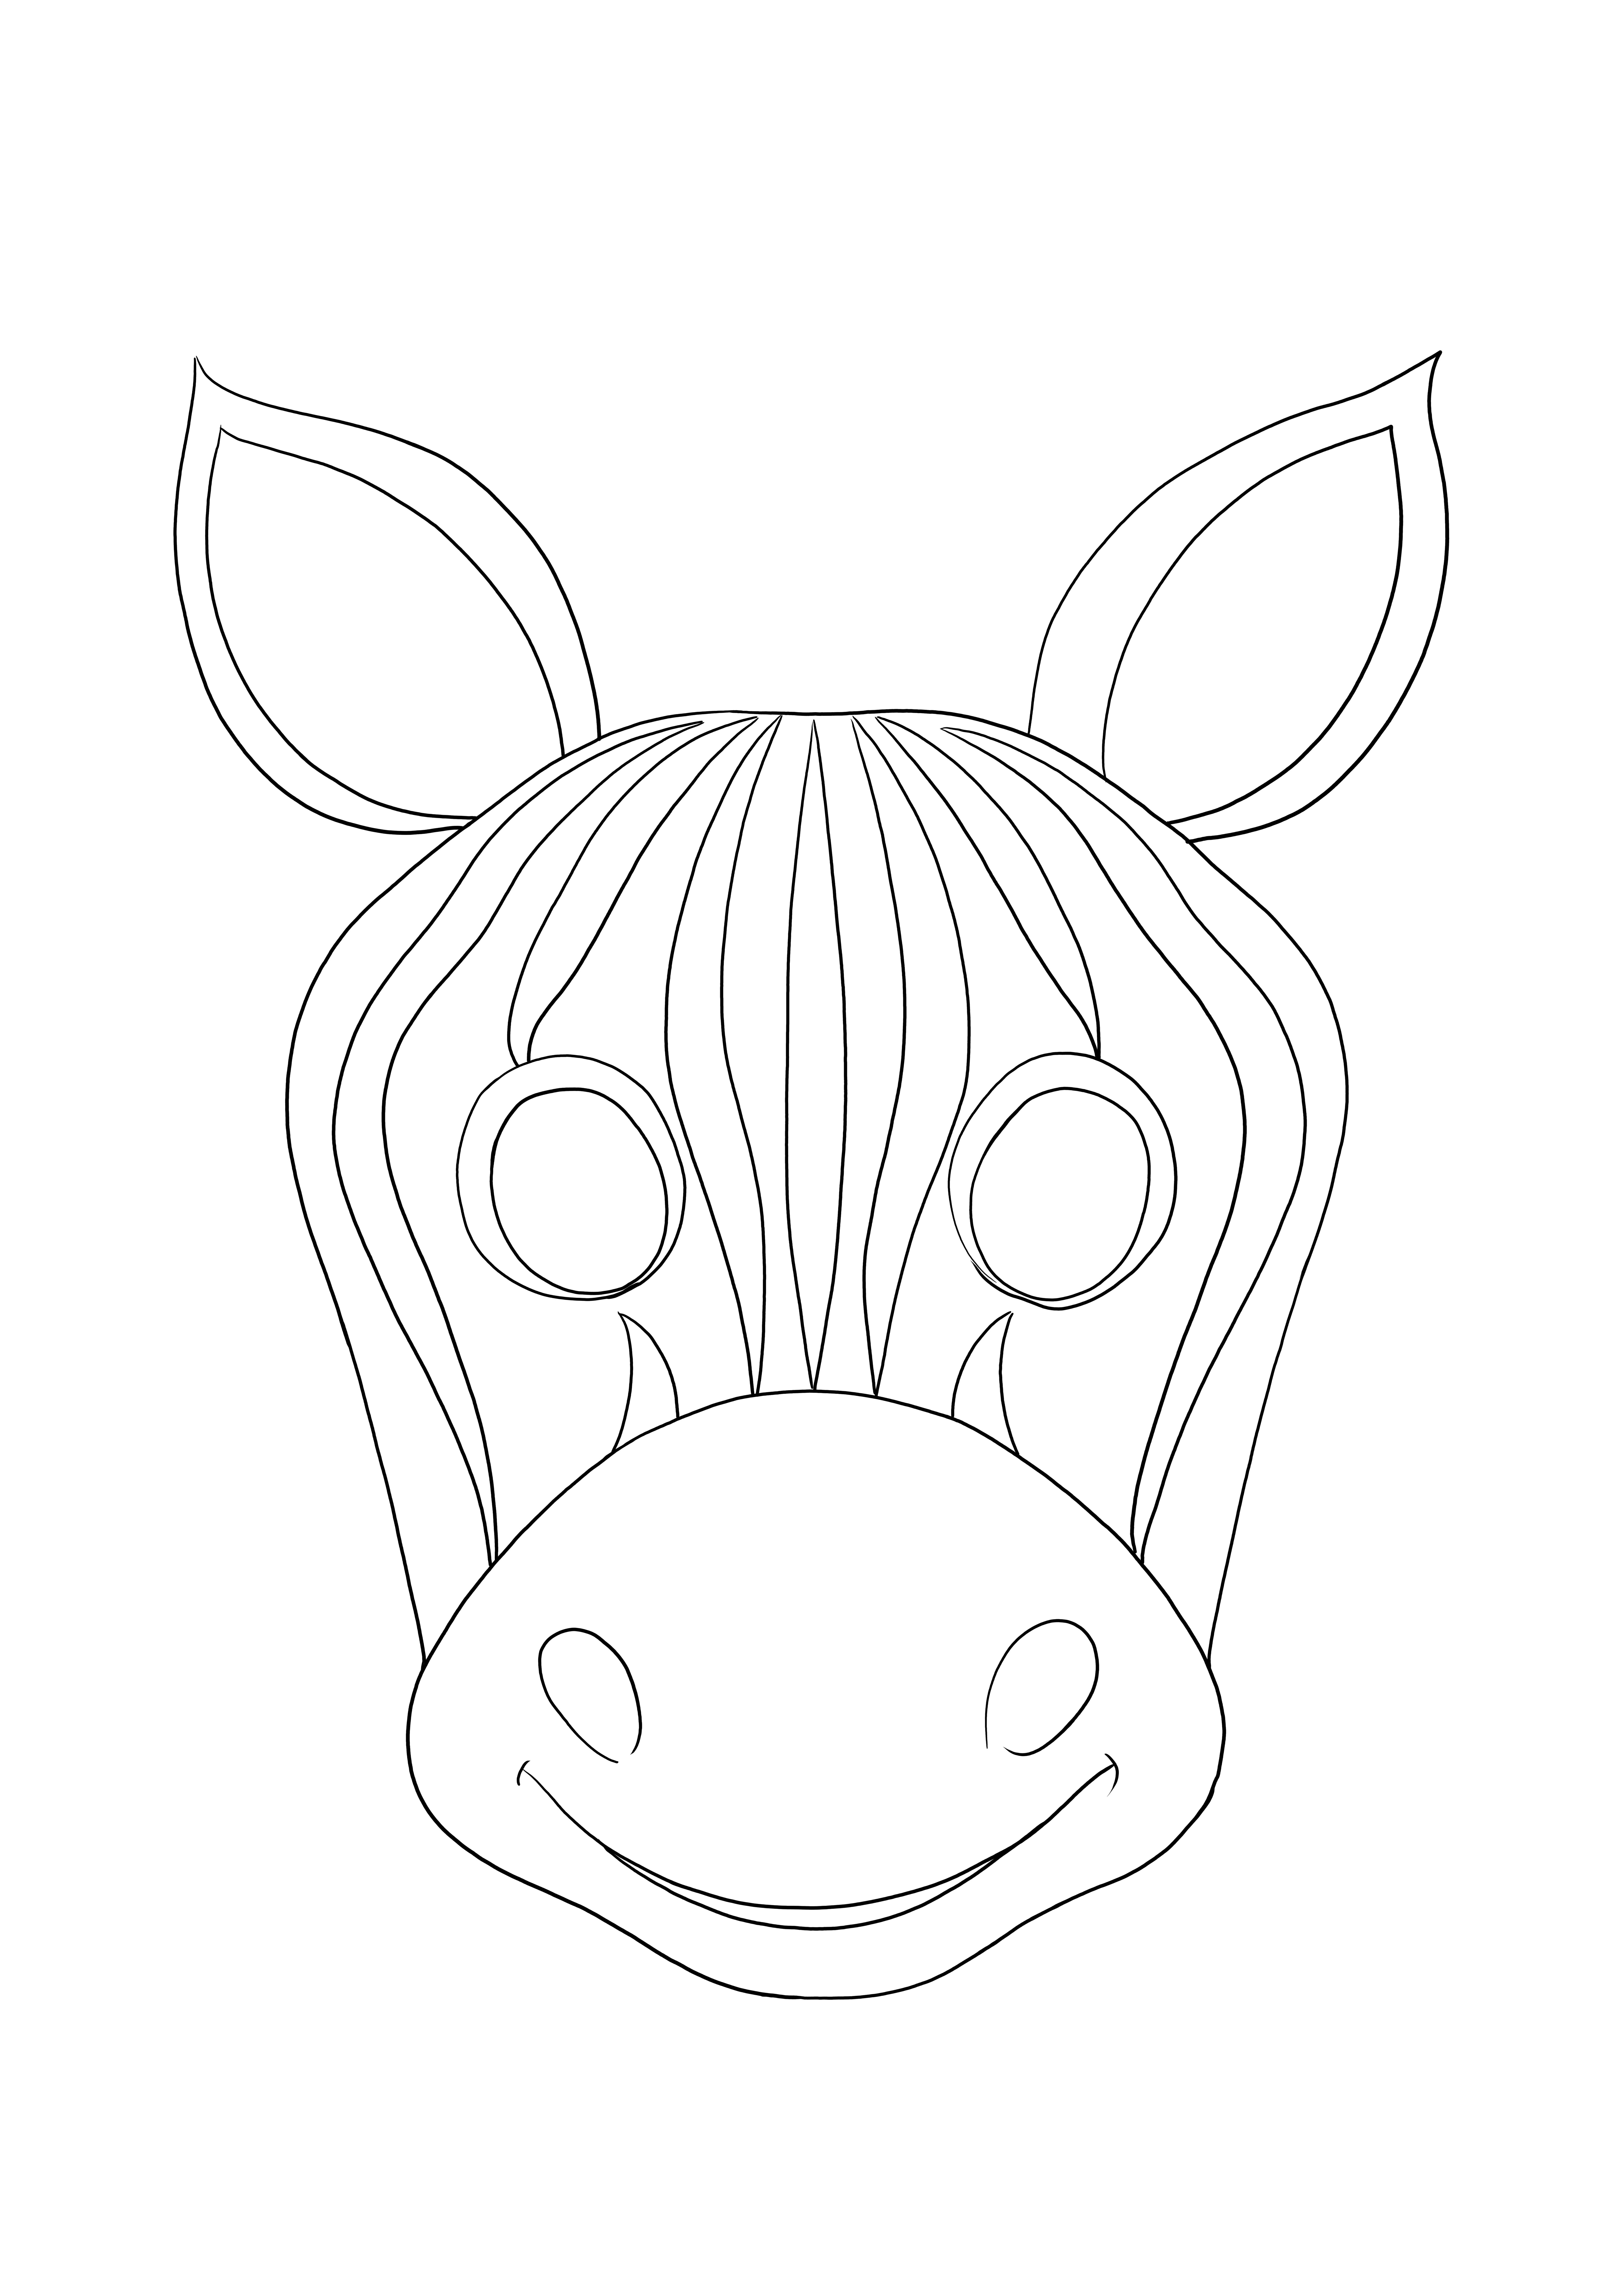 Coloração simples e fácil de uma máscara de zebra para colorir e imprimir gratuitamente